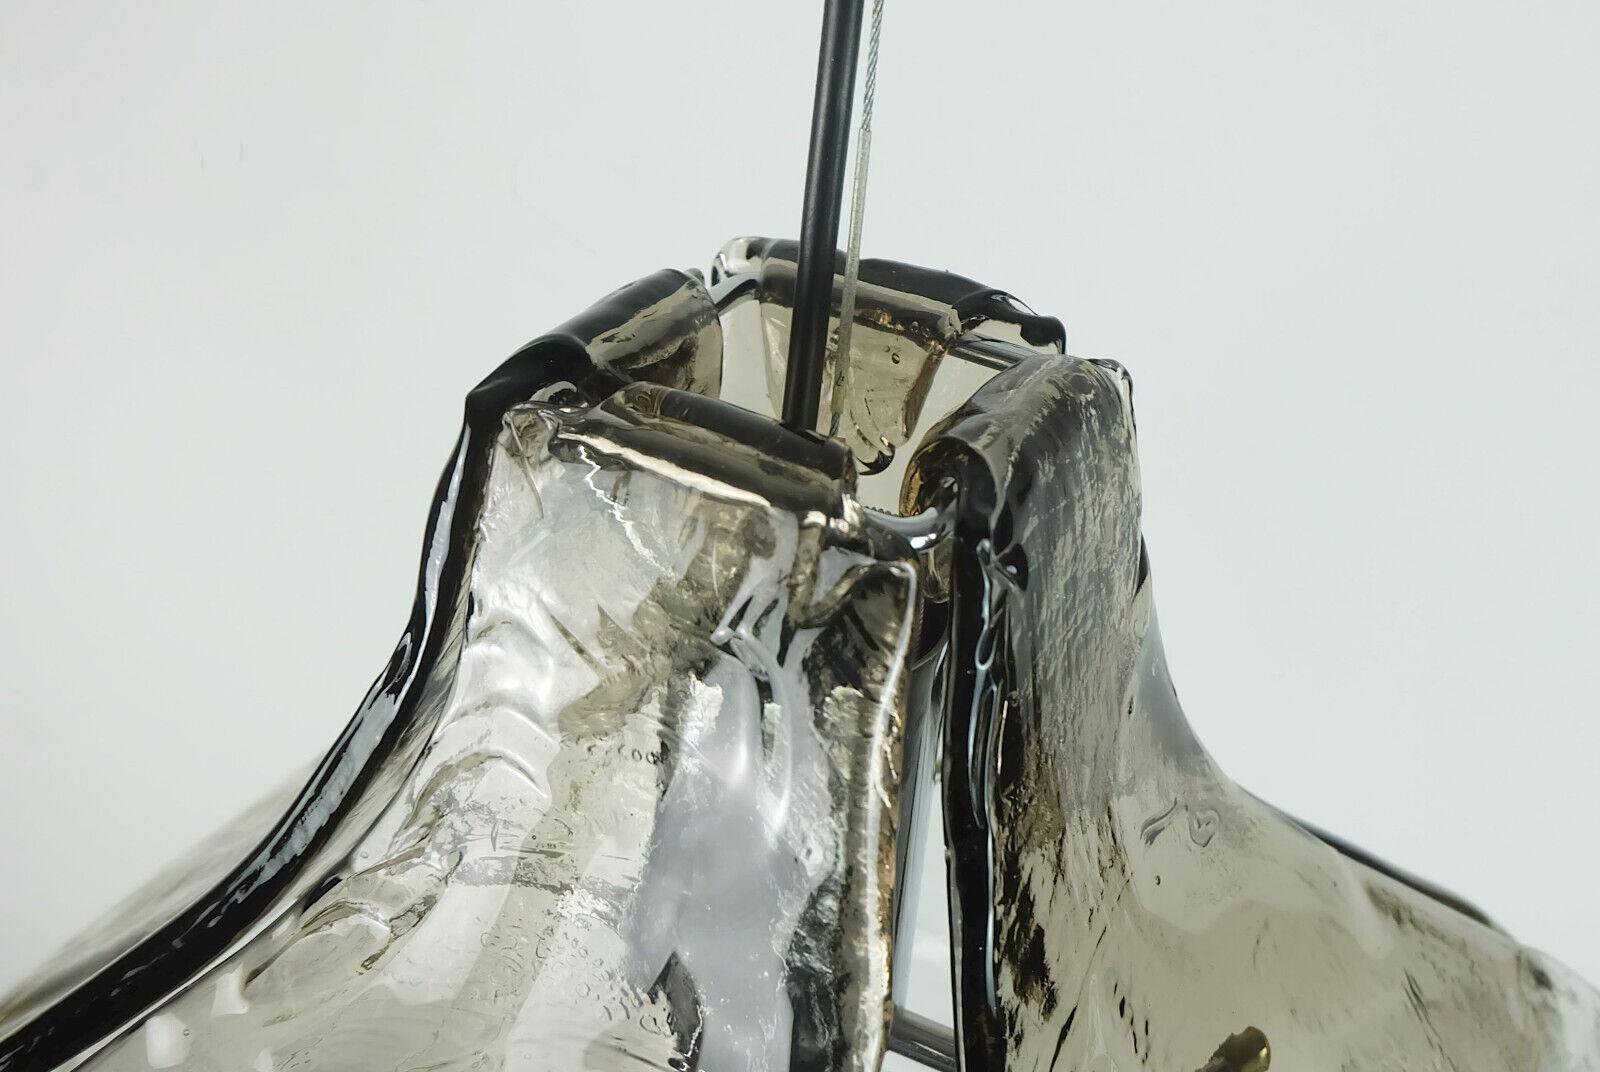 Très belle lampe suspendue italienne du milieu du siècle, conçue par Carlo Nason pour Mazzega. L'abat-jour est composé de quatre grands éléments de verre incurvés, la suspension est en métal chromé. Verre clair avec une structure de glace,